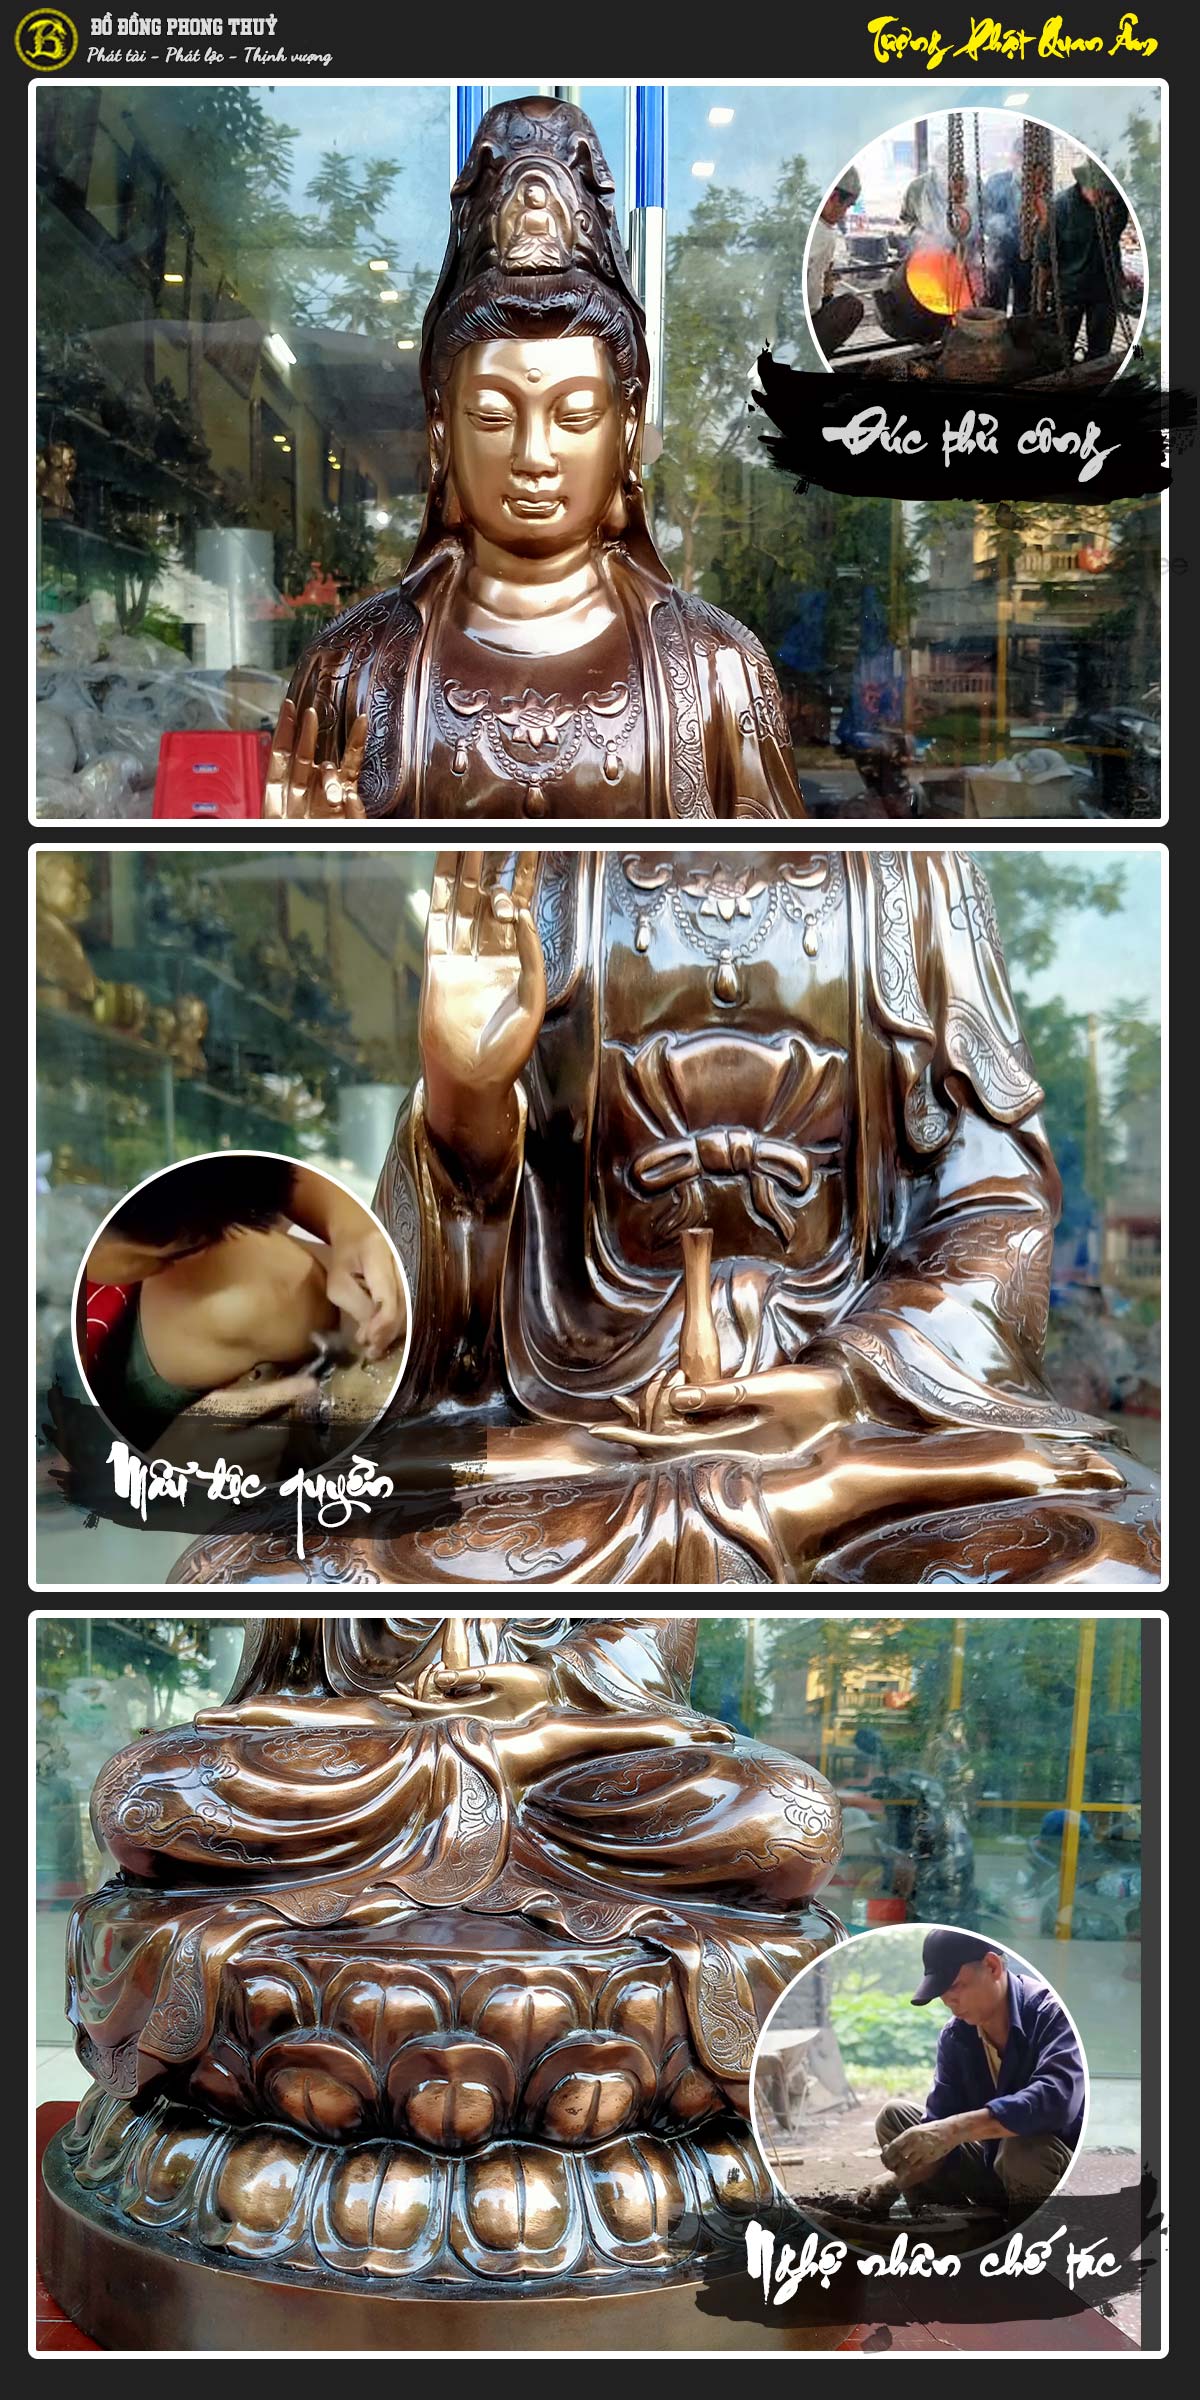 tượng Phật Quan Âm bằng đồng đỏ màu trầm cổ cao 61cm